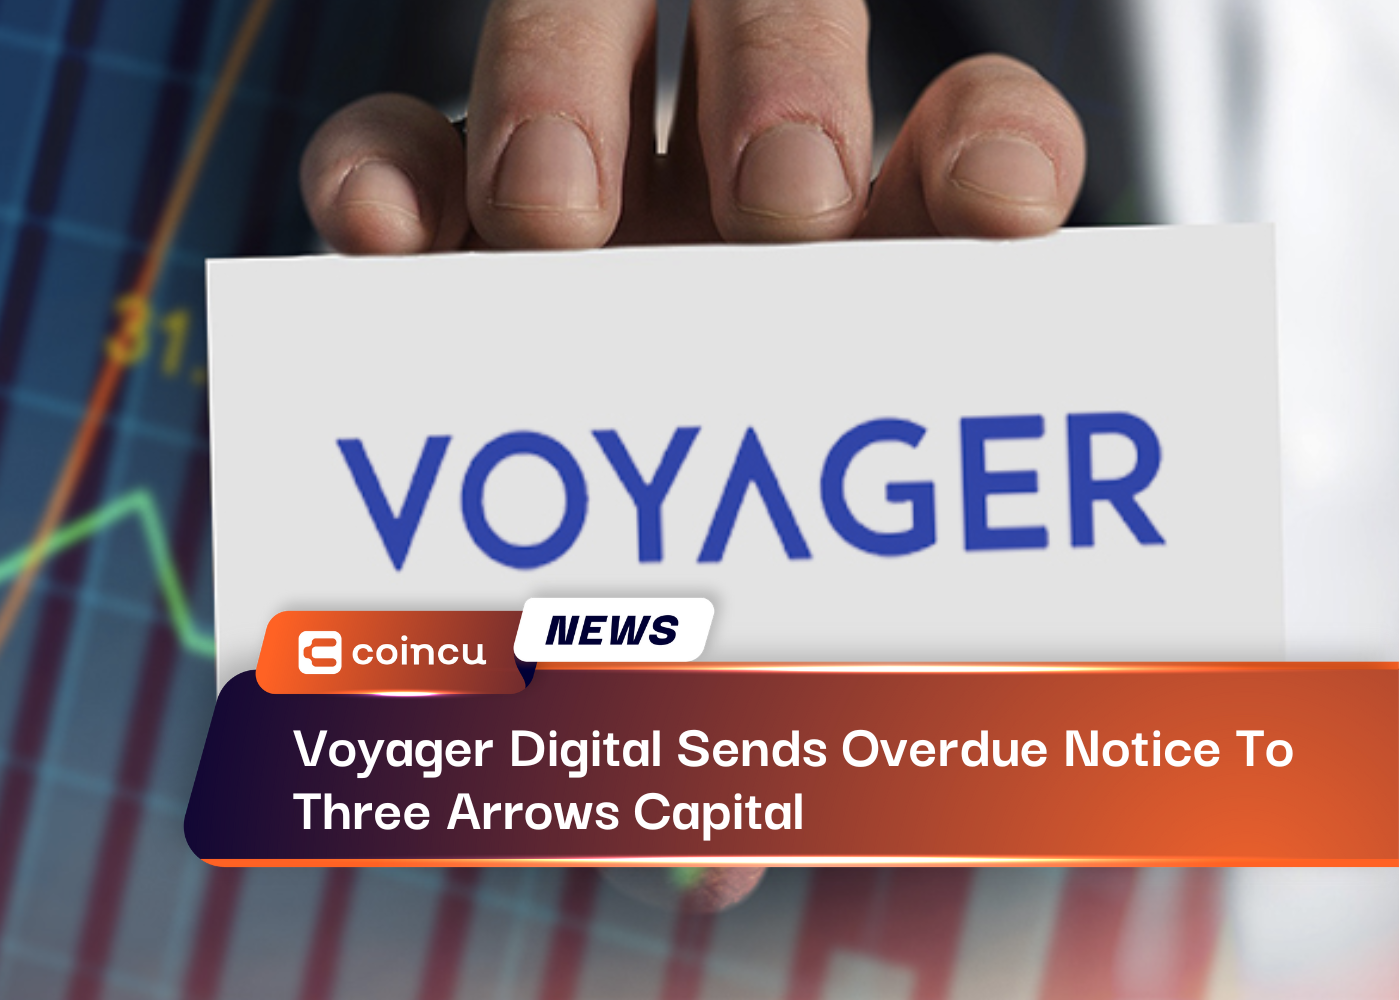 Voyager Digital направила просроченное уведомление компании Three Arrows Capital